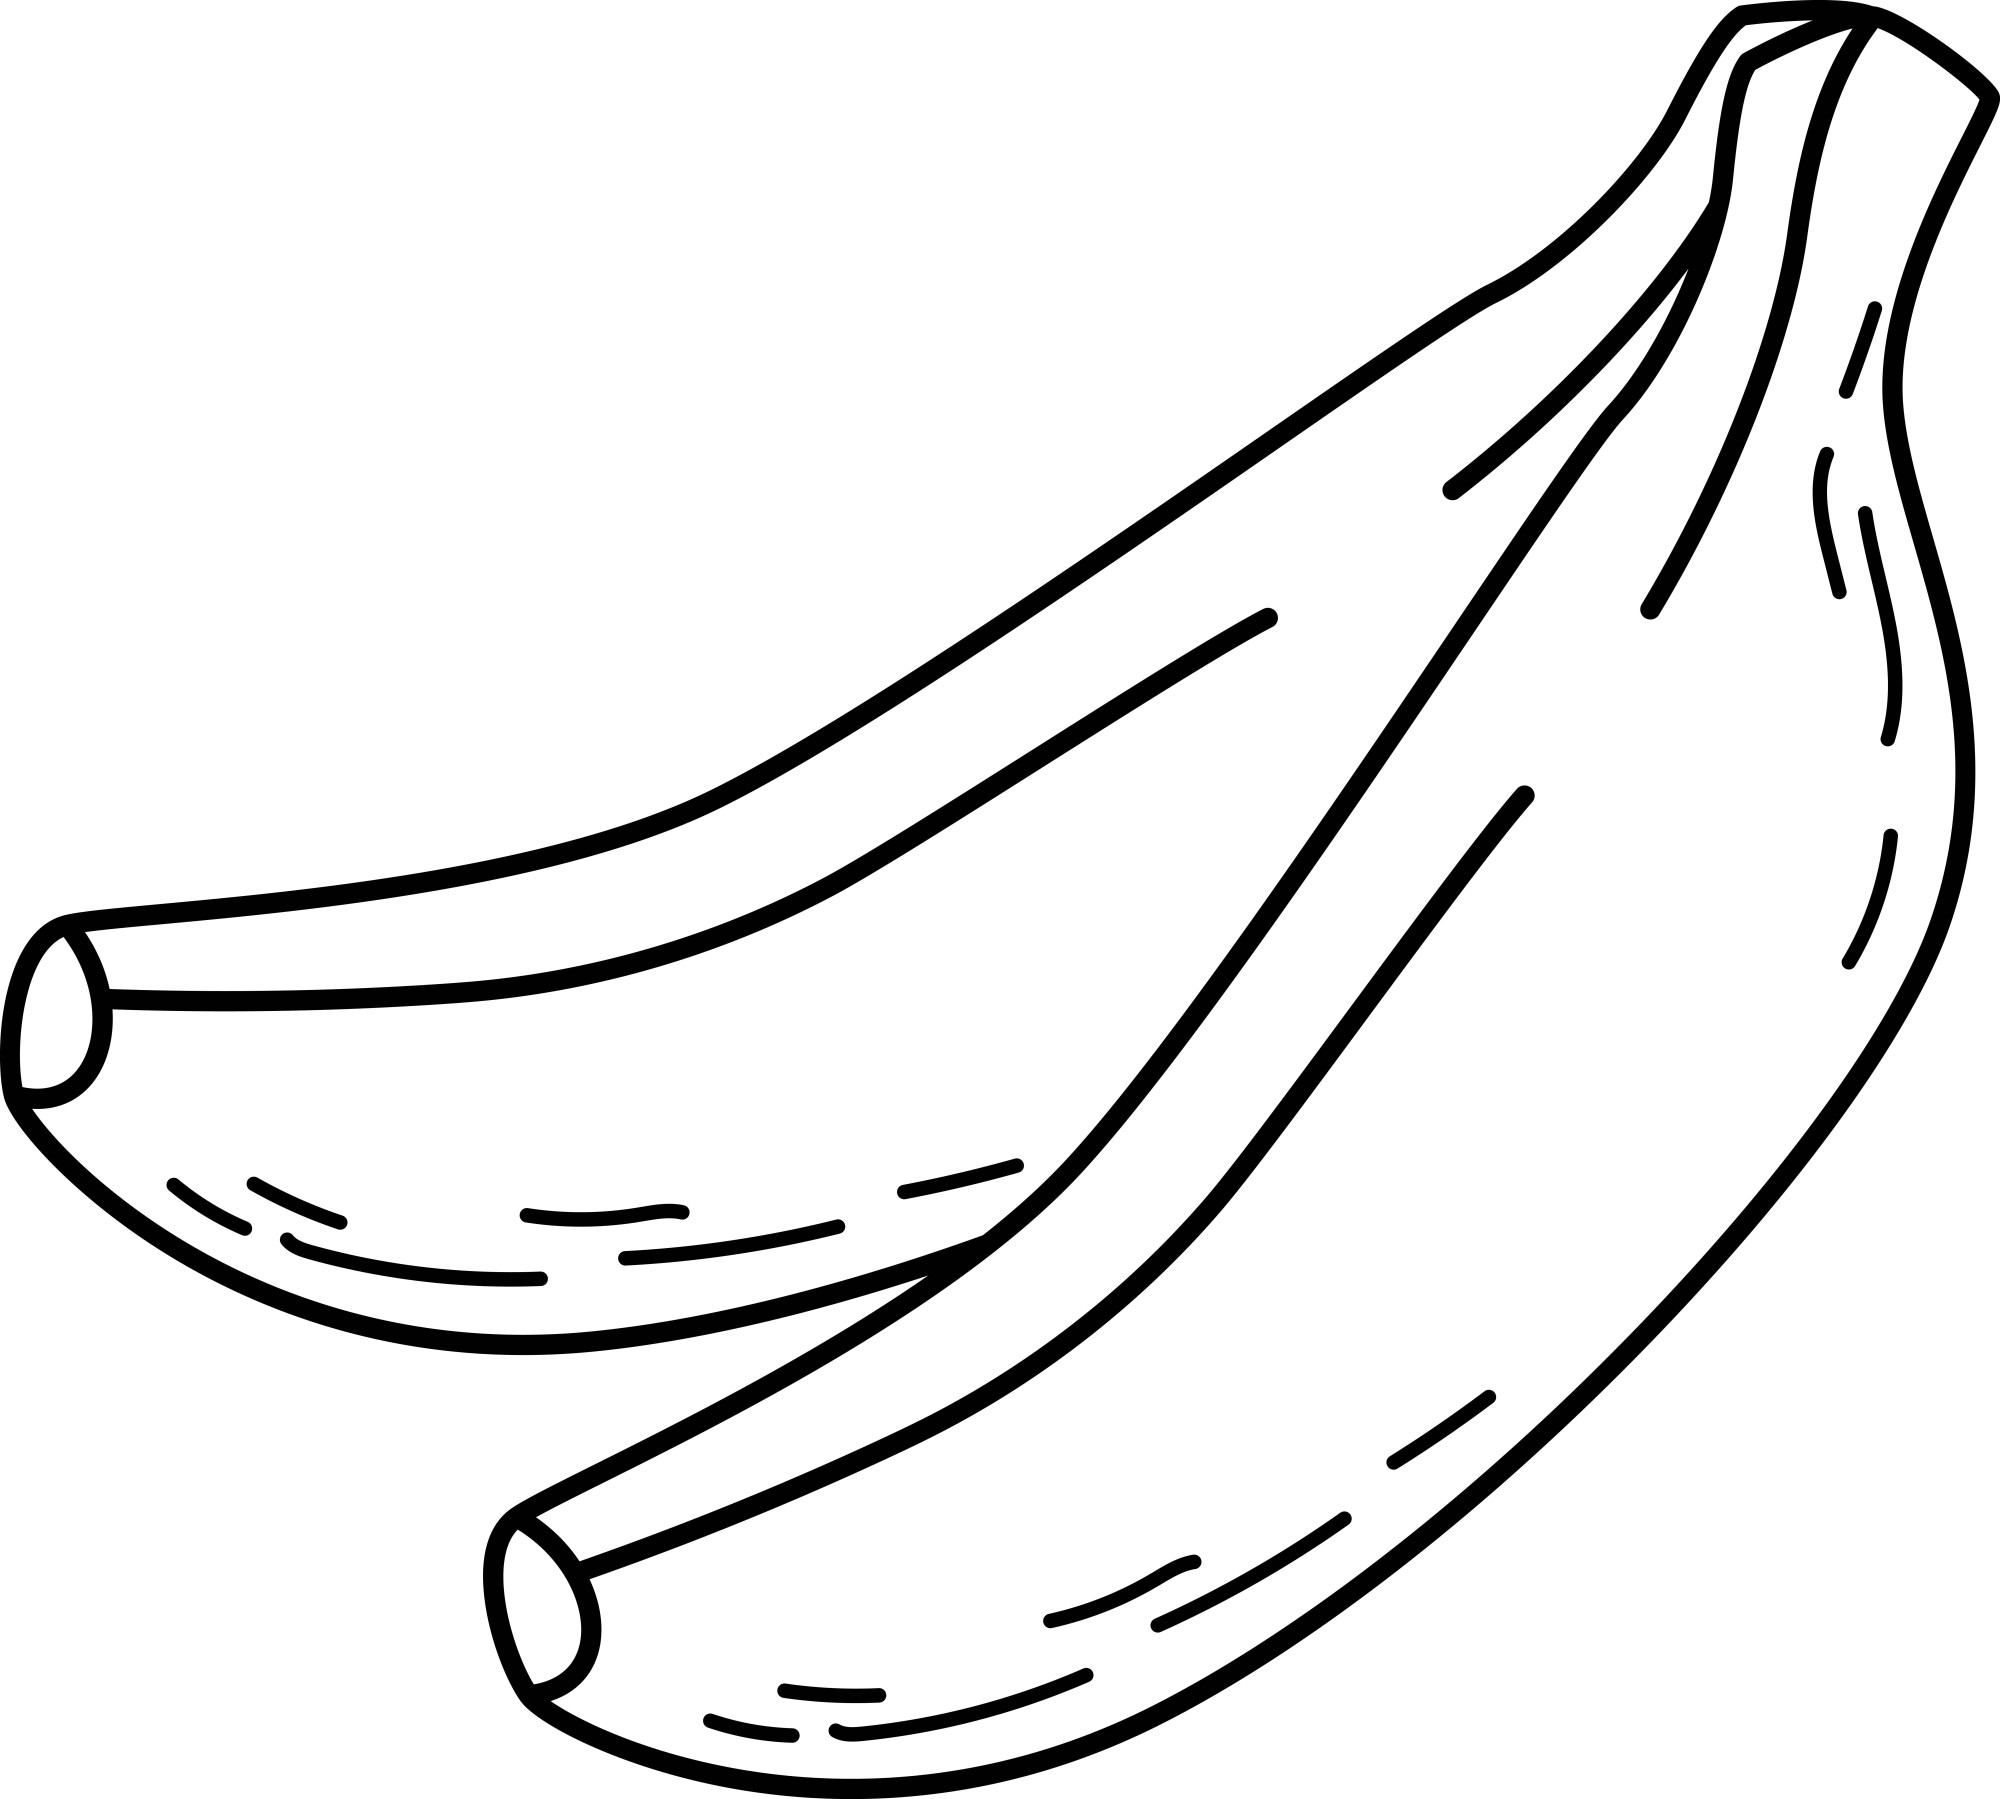 Раскраска для детей: мягкие спелые бананы